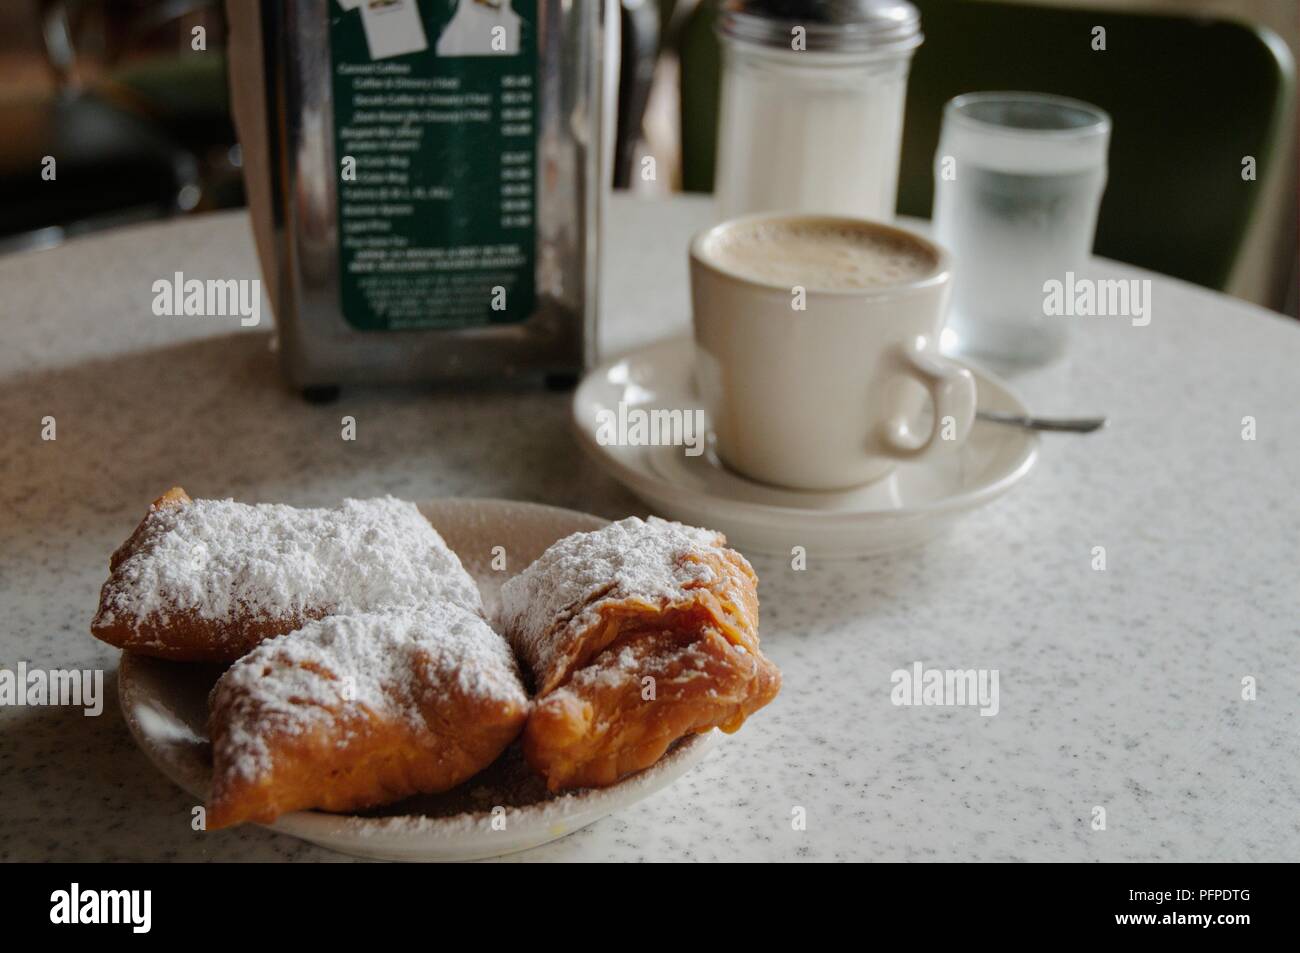 Stati Uniti d'America, Louisiana, New Orleans, Cafe du Monde, una tazza di caffè espresso accanto alla glassa di zucchero-spolverata di pasticceria su un tavolo Foto Stock